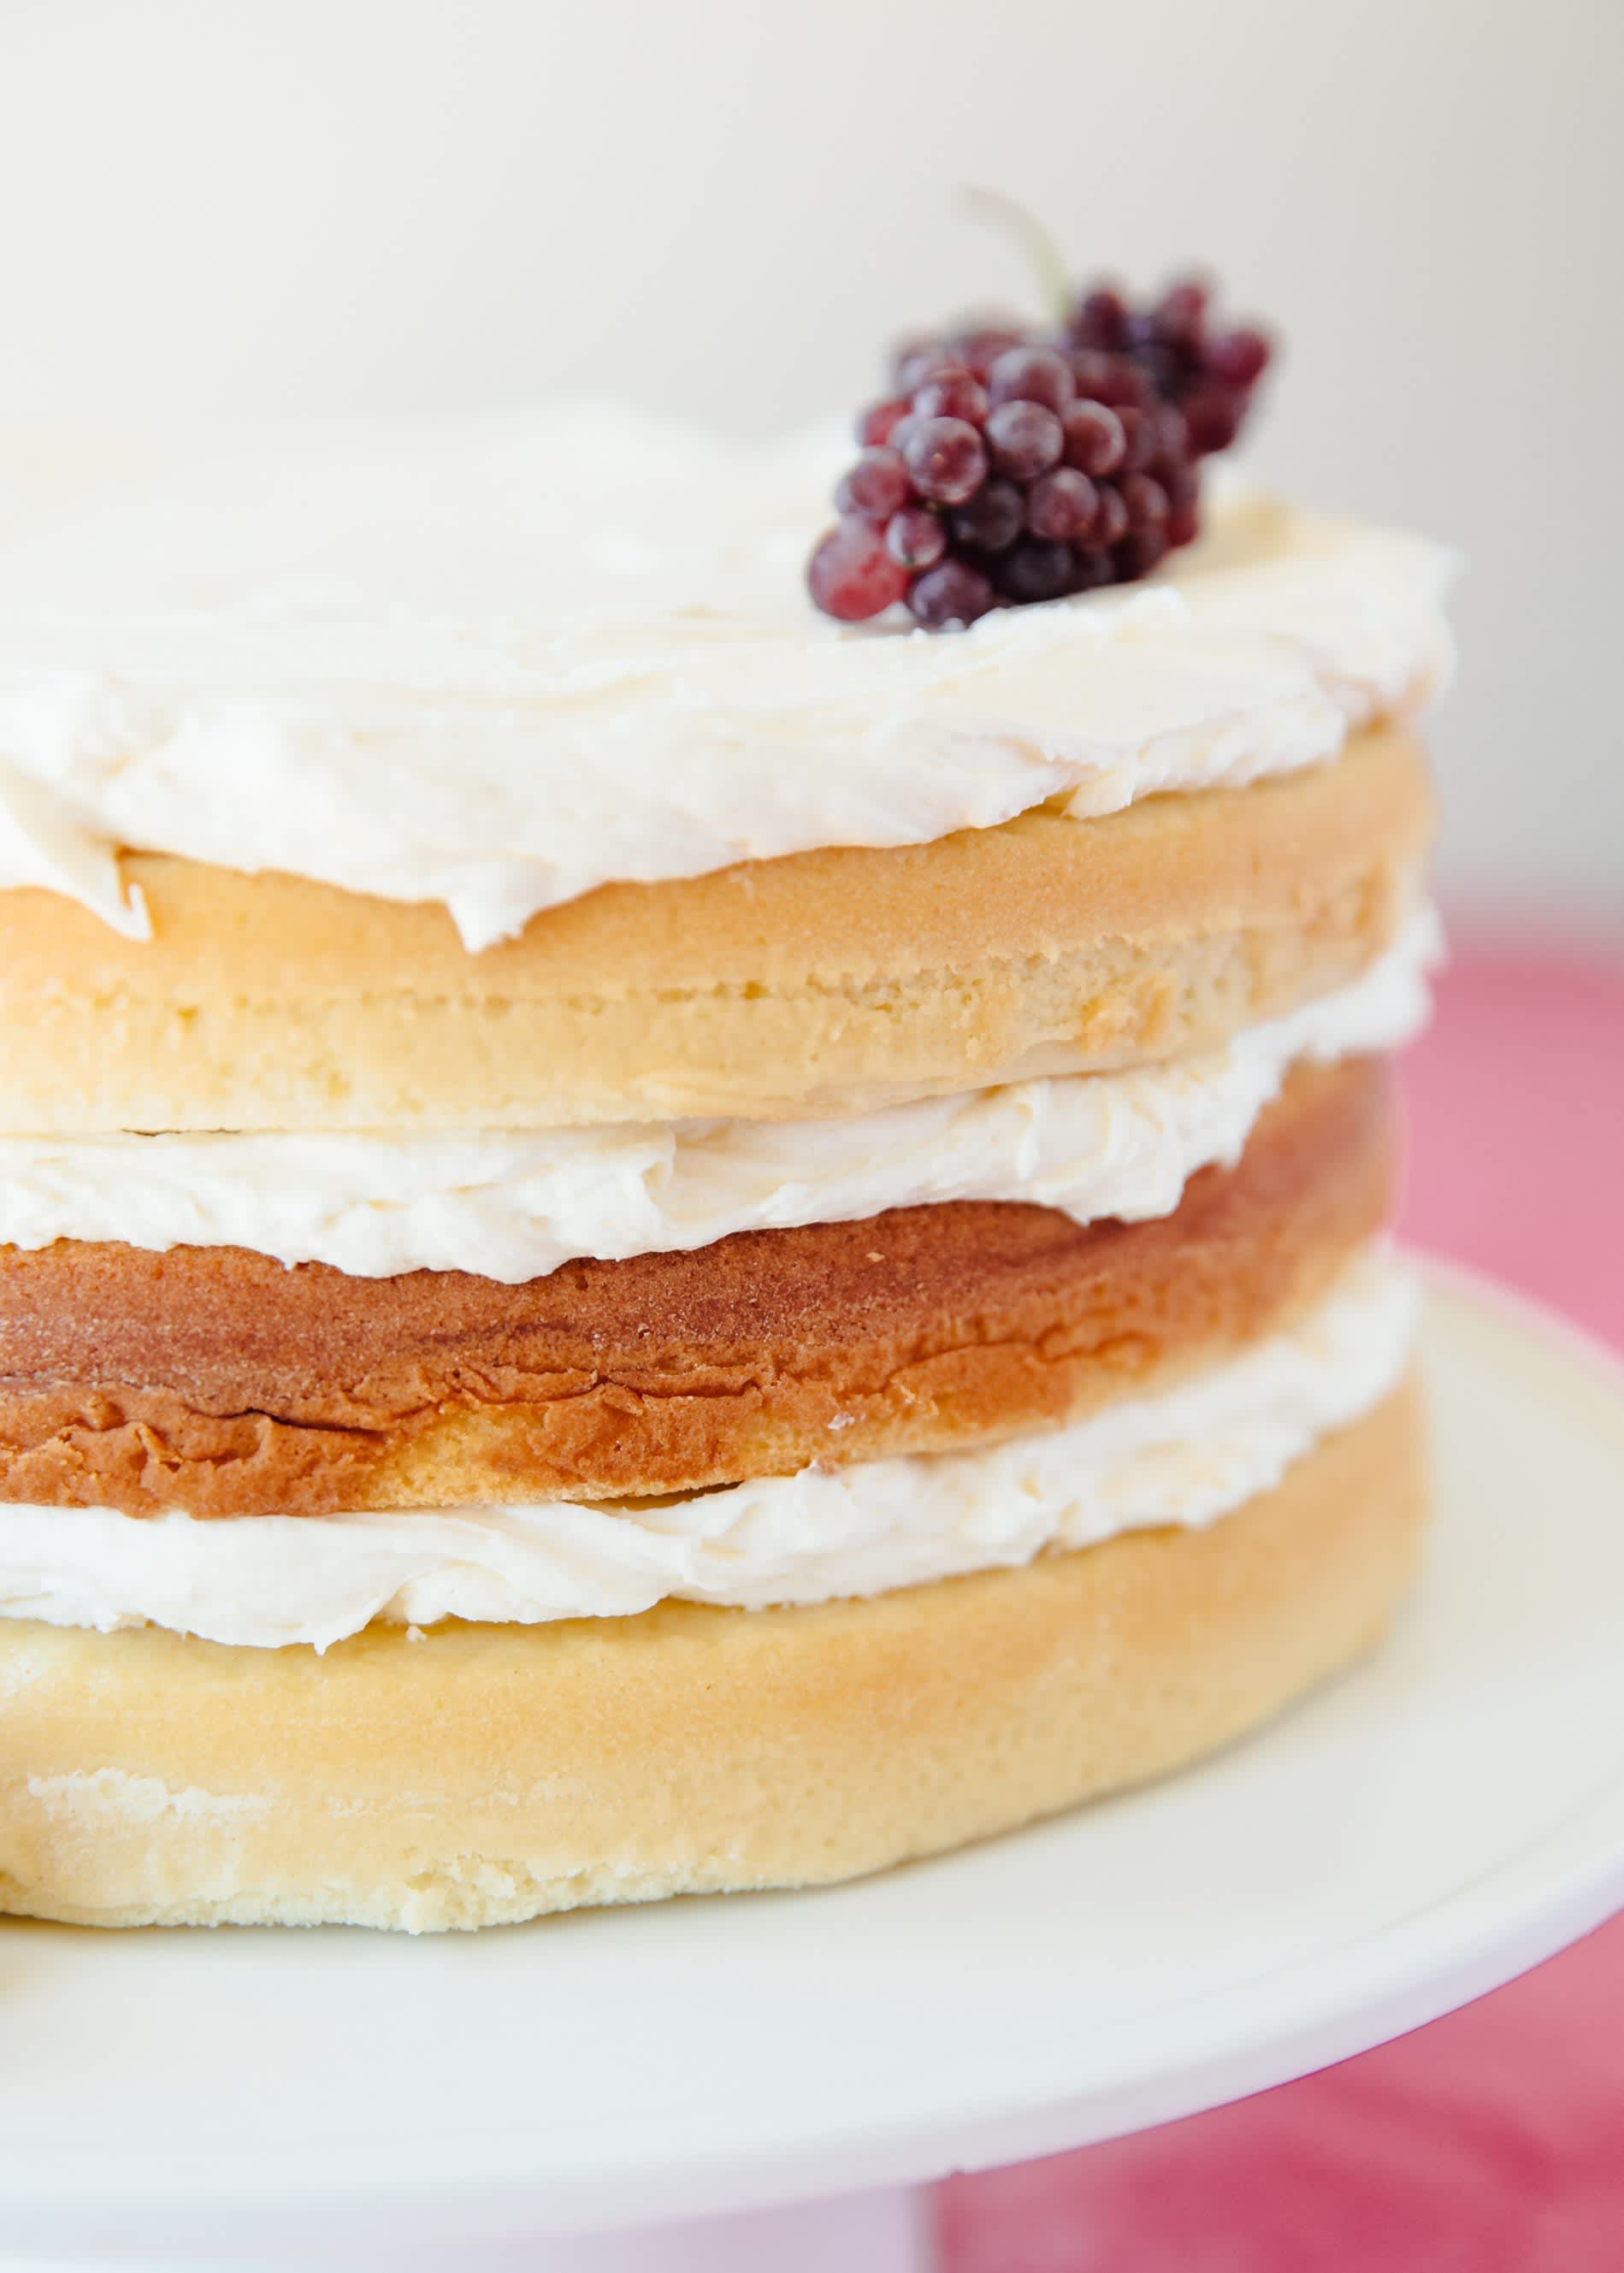 10 Best Cake Baking & Decorating Tools - Sally's Baking Addiction